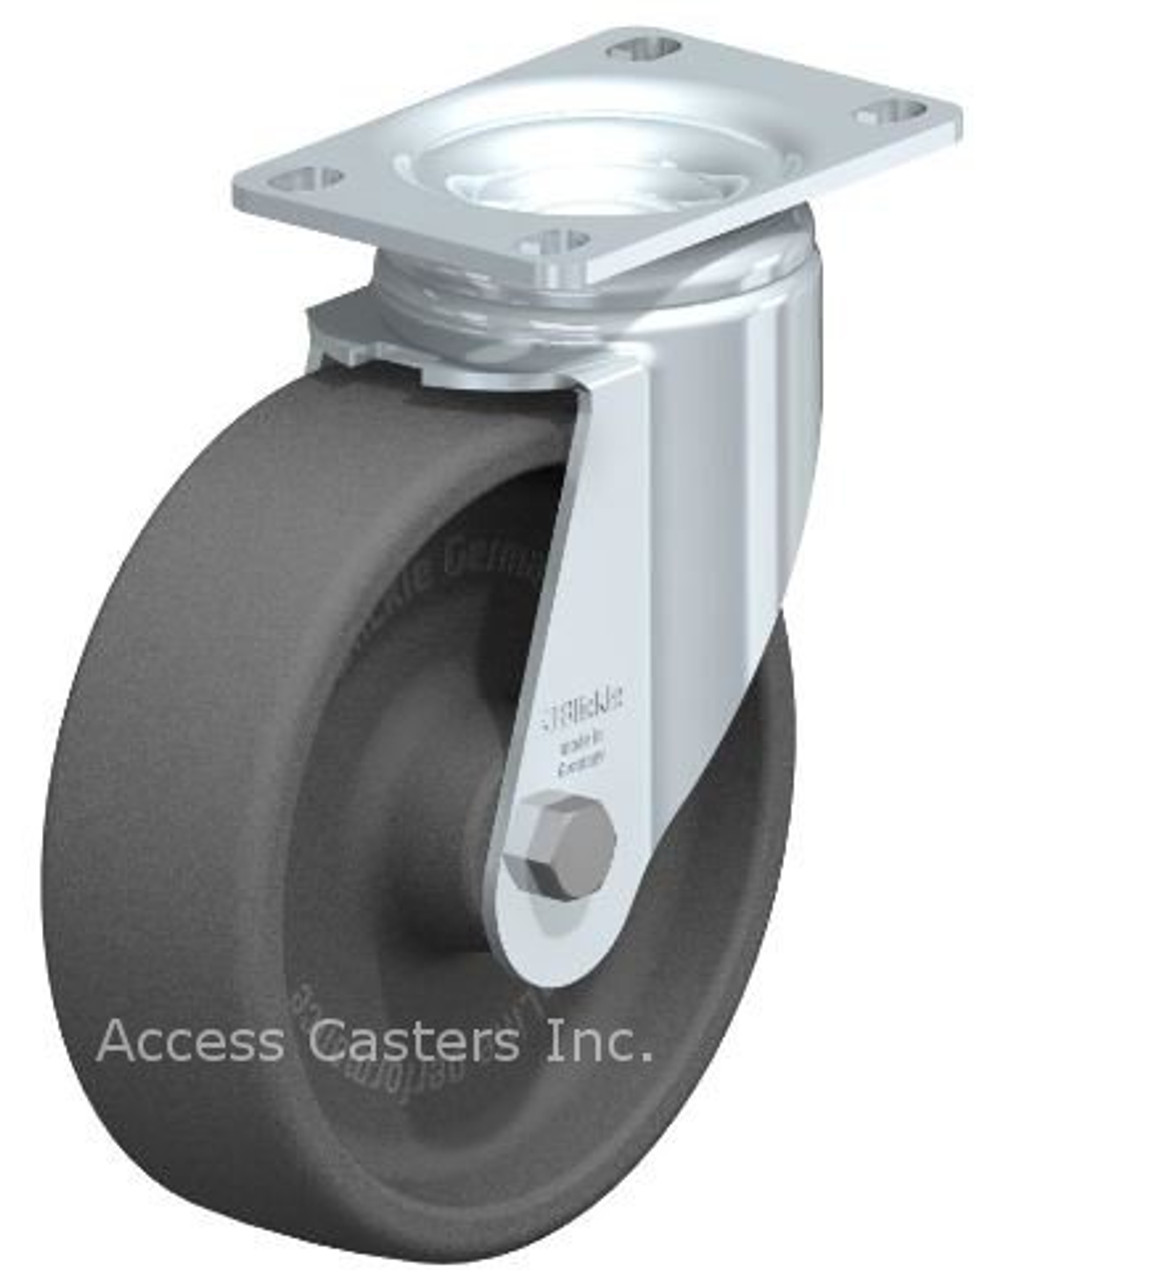 LI-POHI 125G-12-XAT Blickle 5" Swivel Caster POHI Wheel Plate Ball Bearing